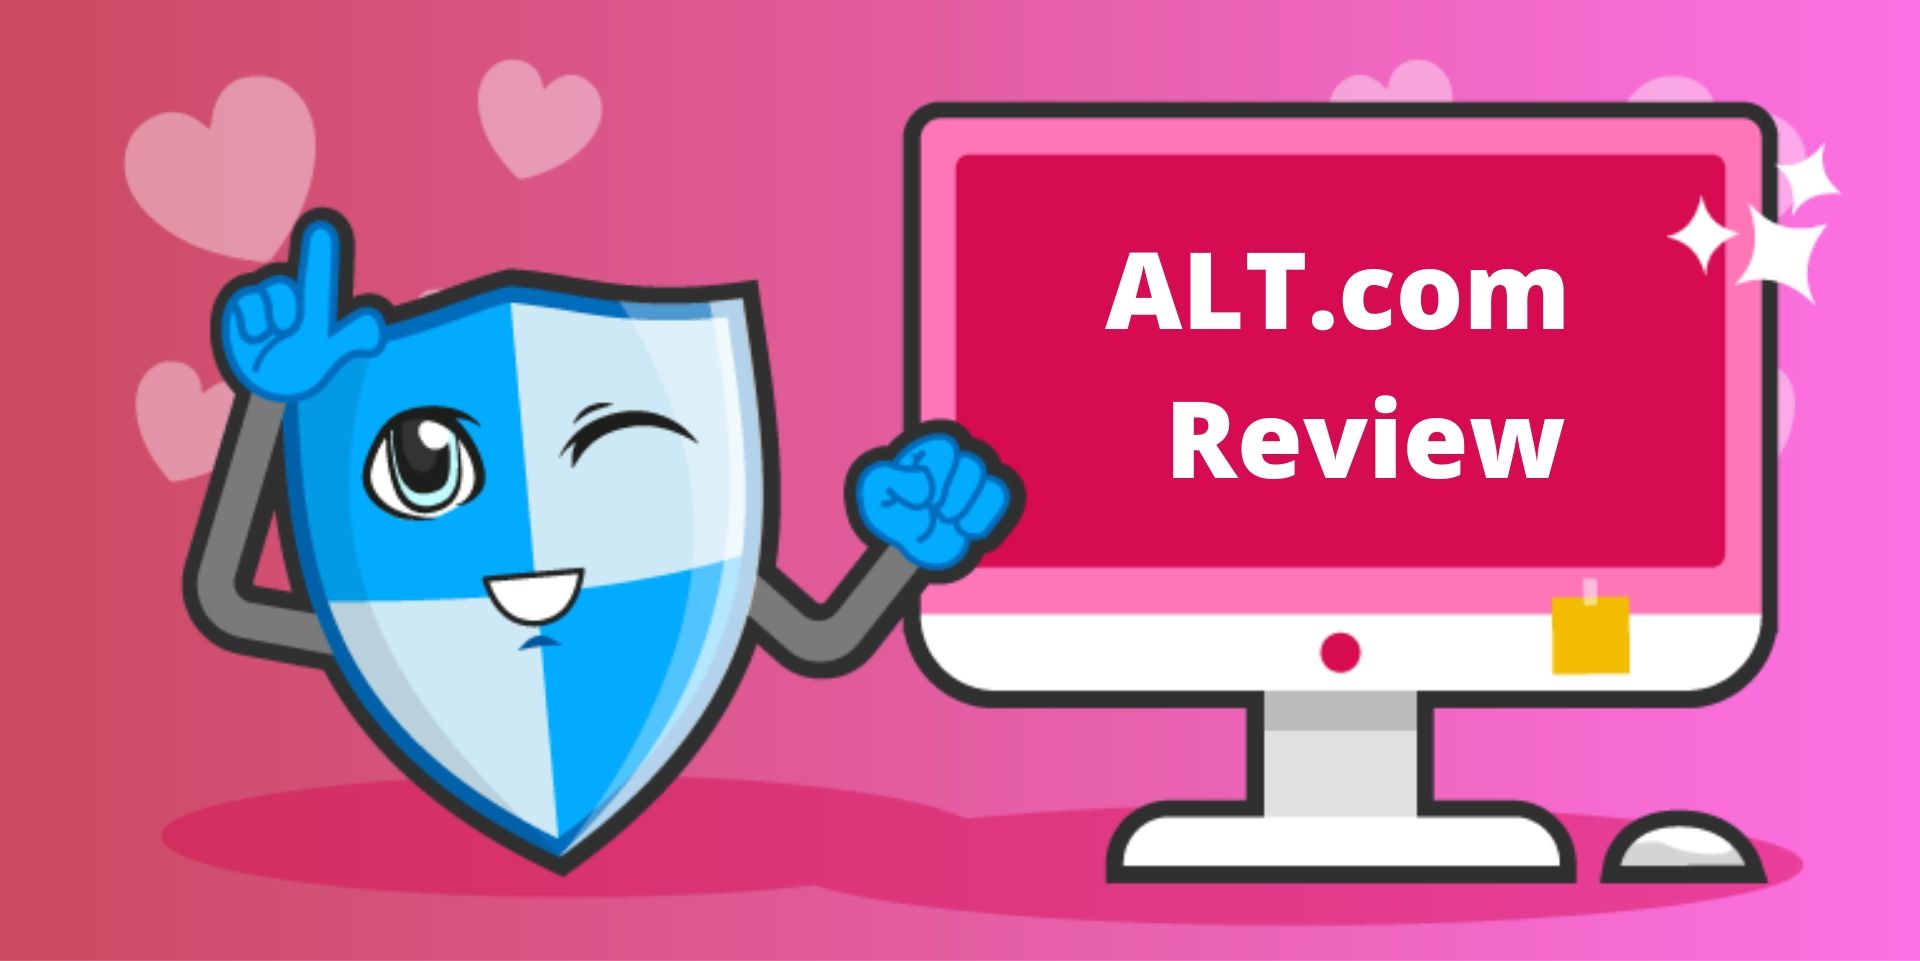 ALT.com Review